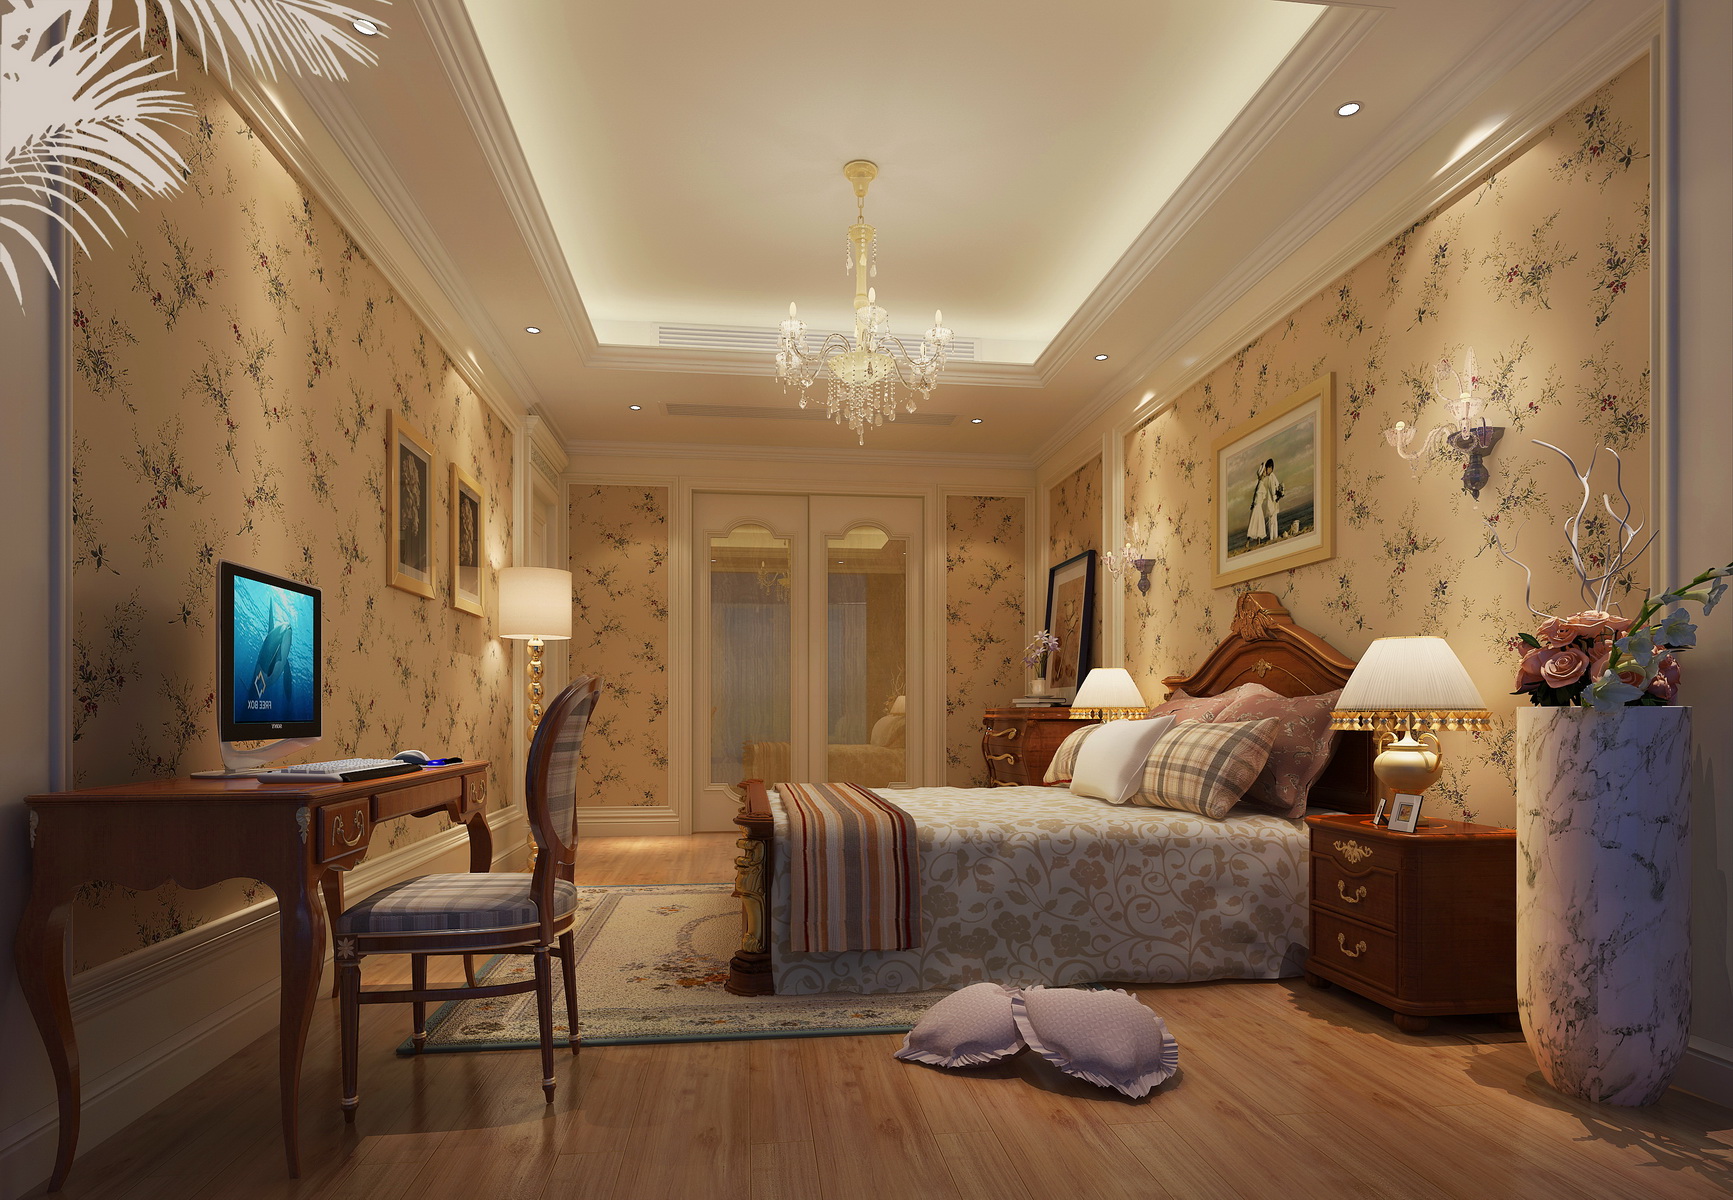 别墅 白领 简约 欧式 卧室图片来自在燕晗山居的分享